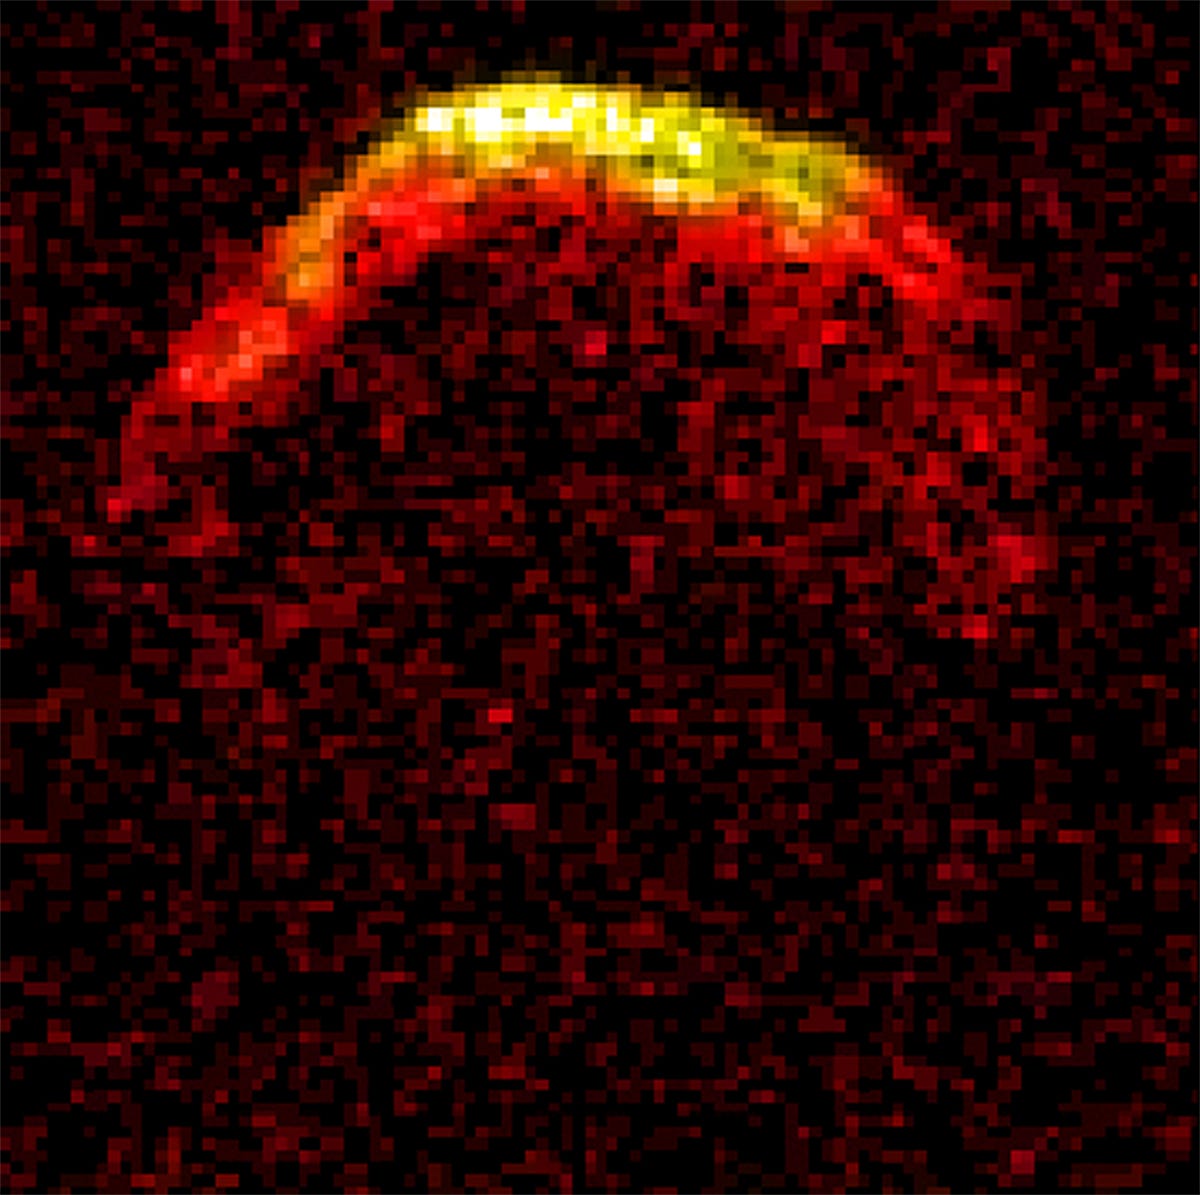 near earth asteroid 1950 da nasa jpl